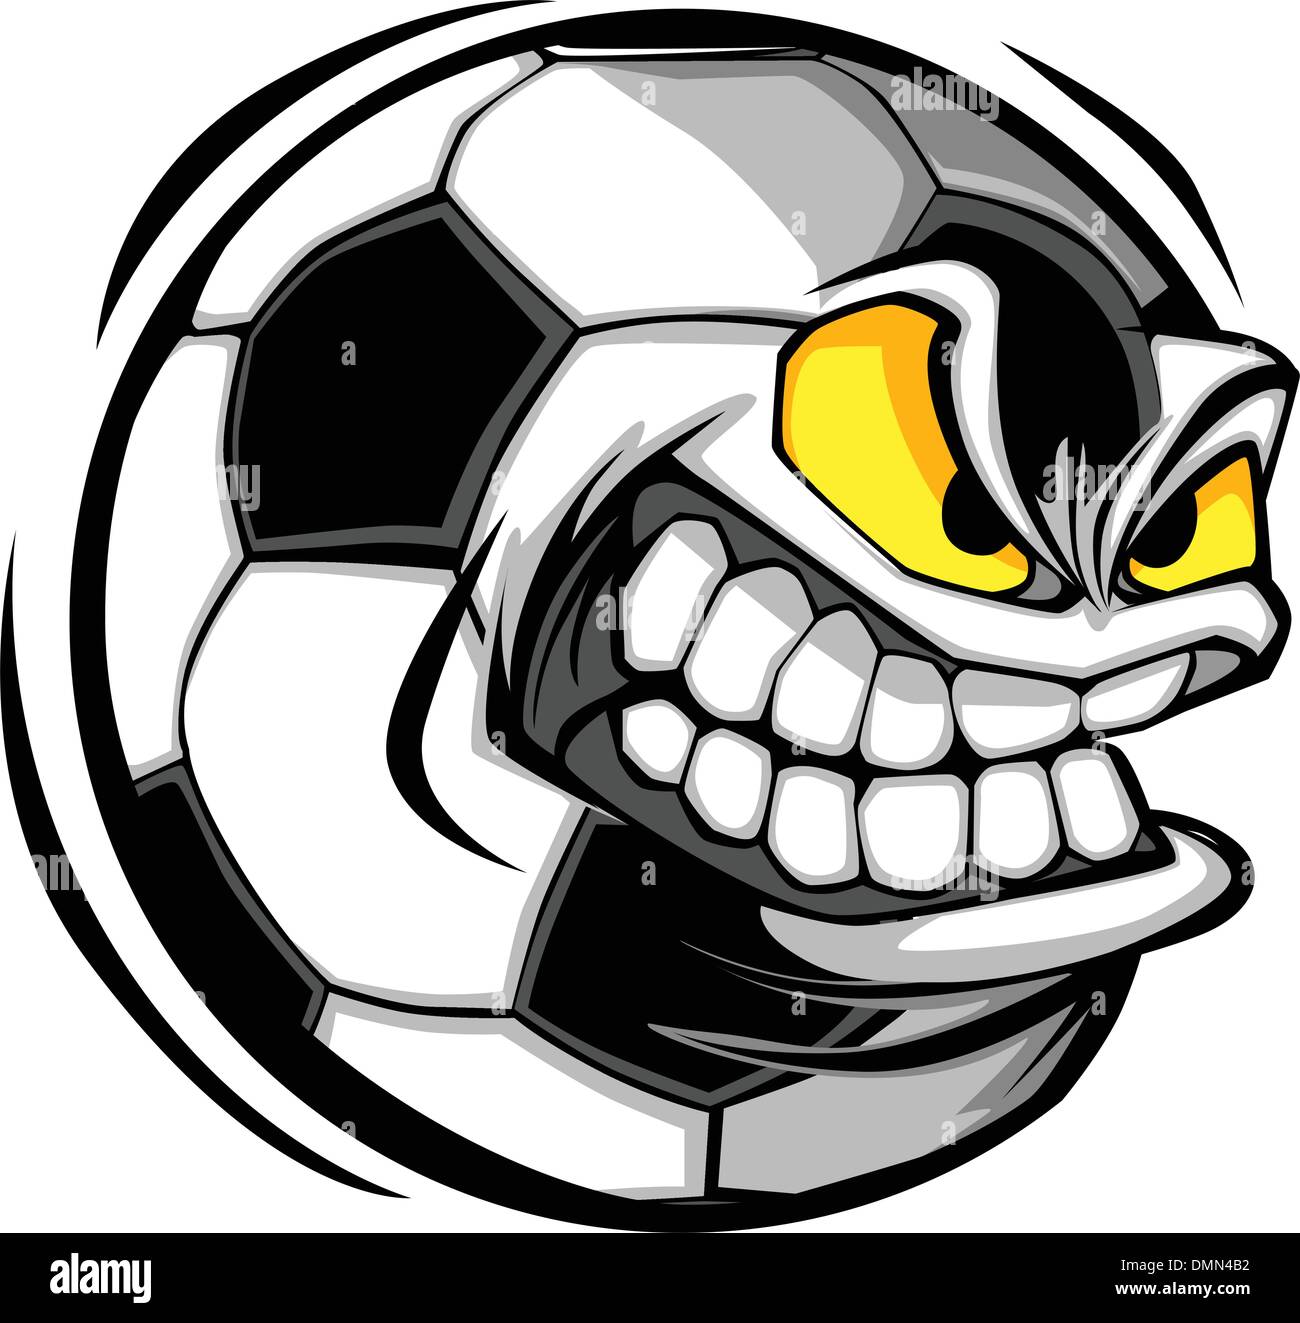 Soccer Ball Face Cartoon Vector Image Stock Vector